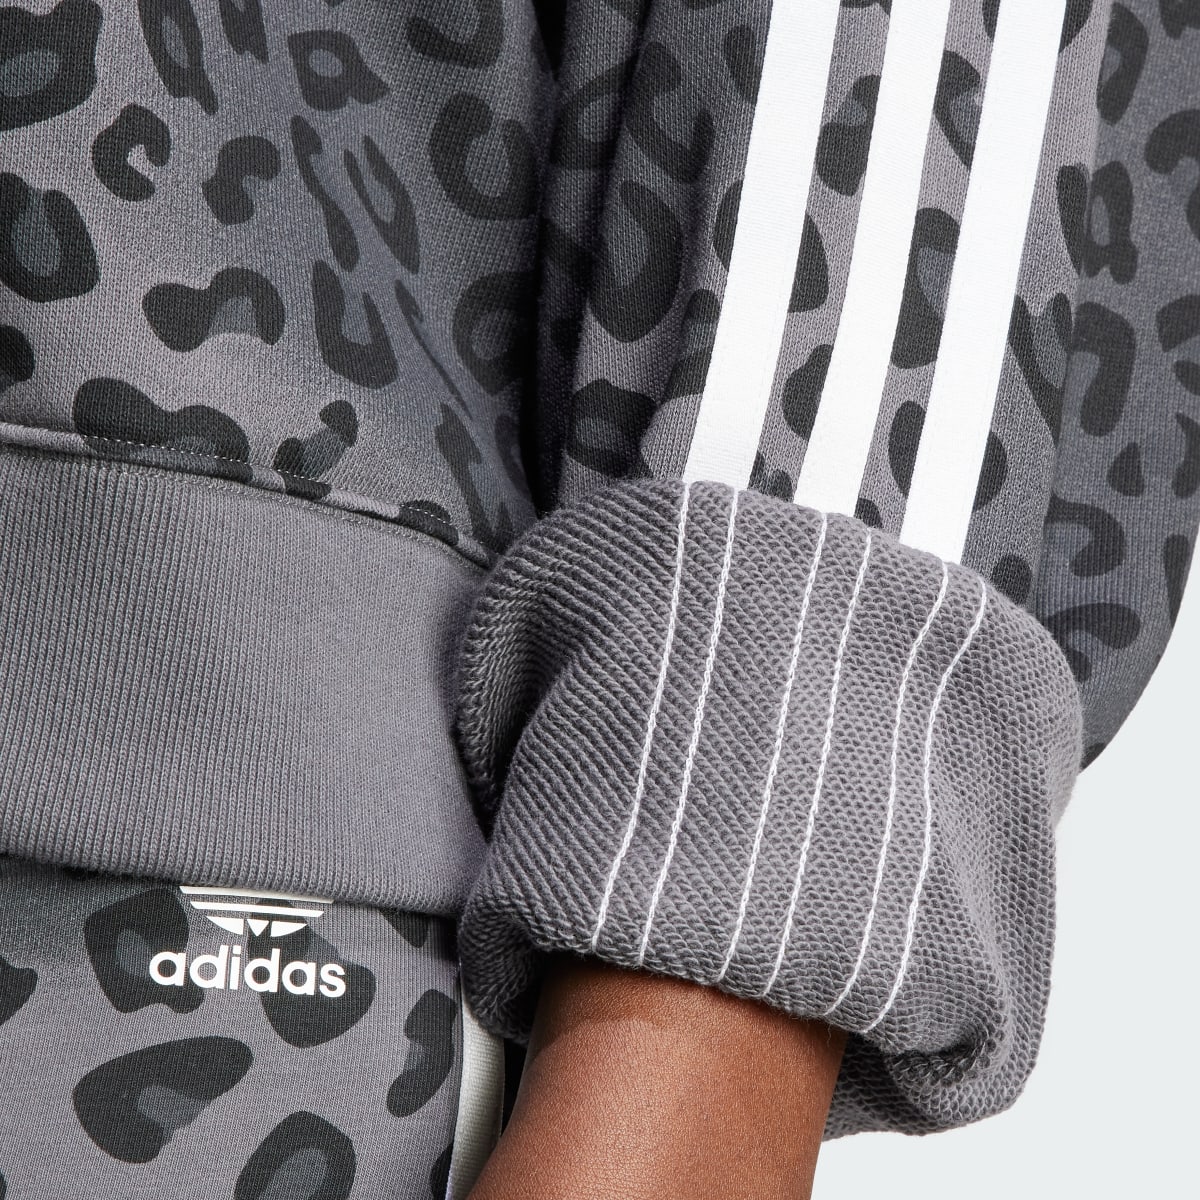 Adidas Originals Leopard Luxe Trefoil Crew Sweatshirt. 7